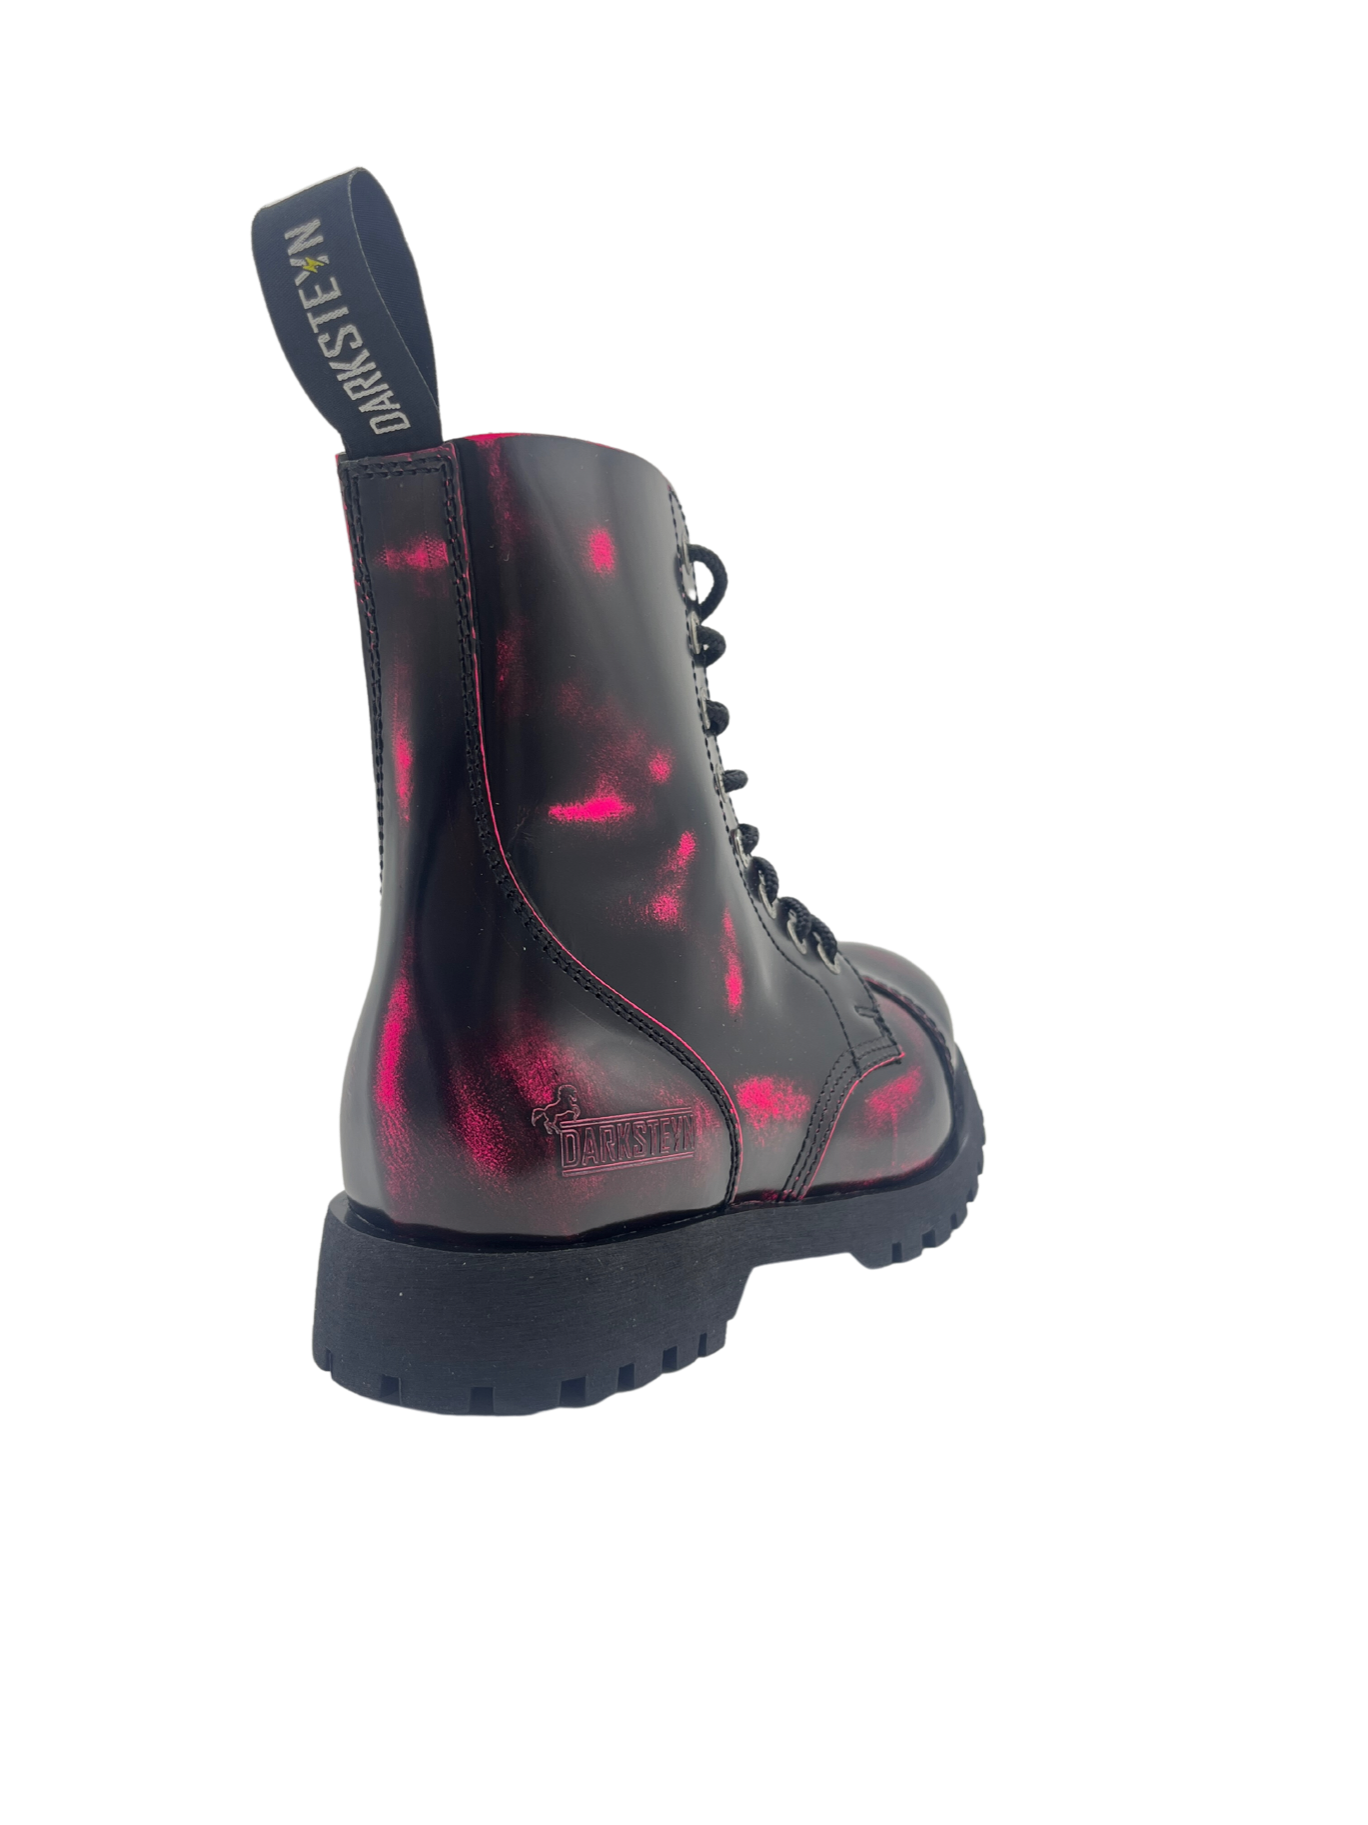 Darksteyn Stiefel Schuhe 8 Eye Ranger Premium Boots Pink Rosa Springerstiefel